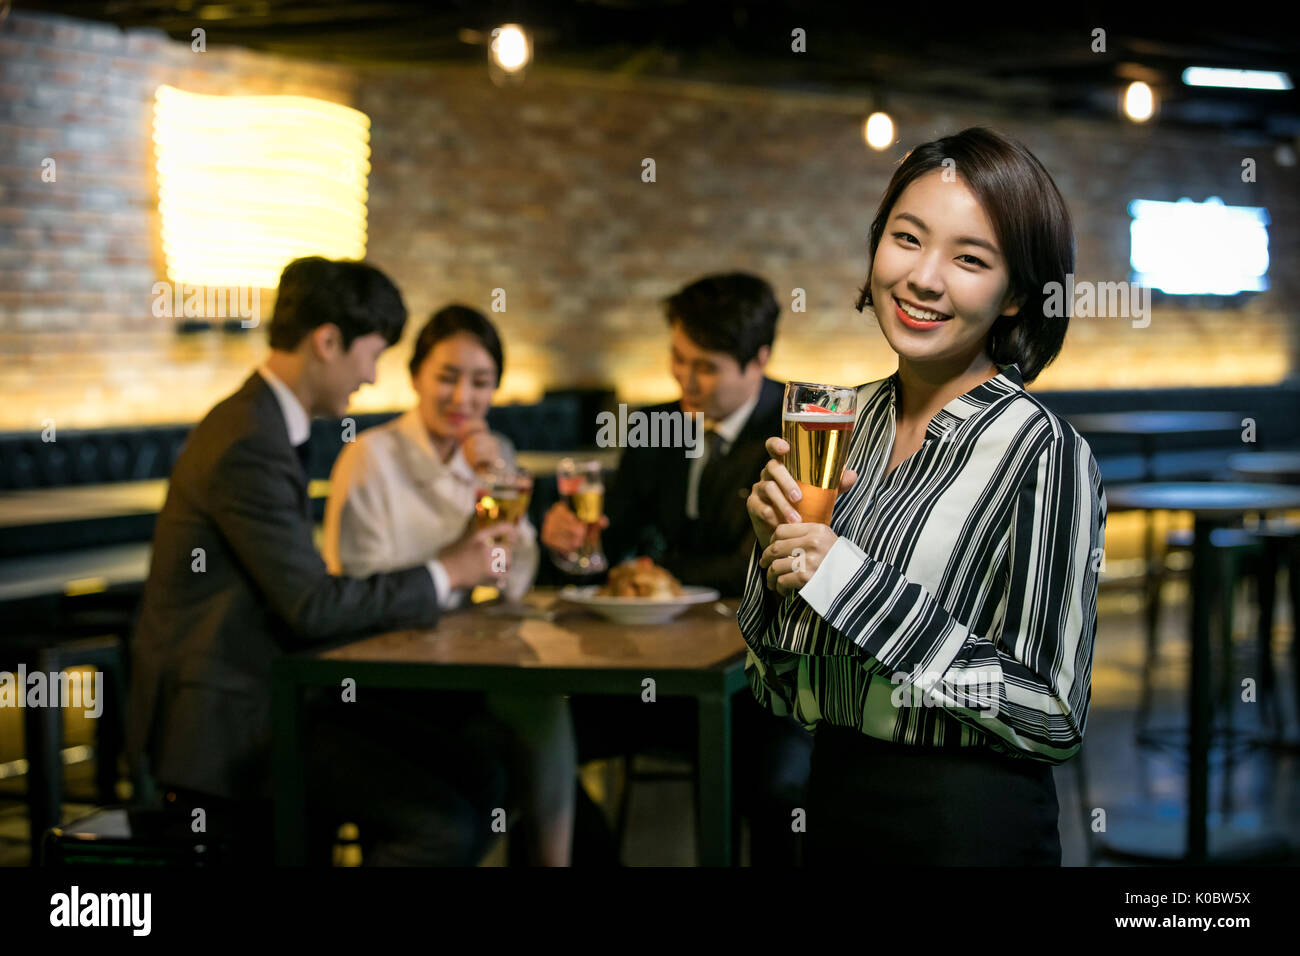 Smiling businesswoman et ses collègues au get-together Banque D'Images